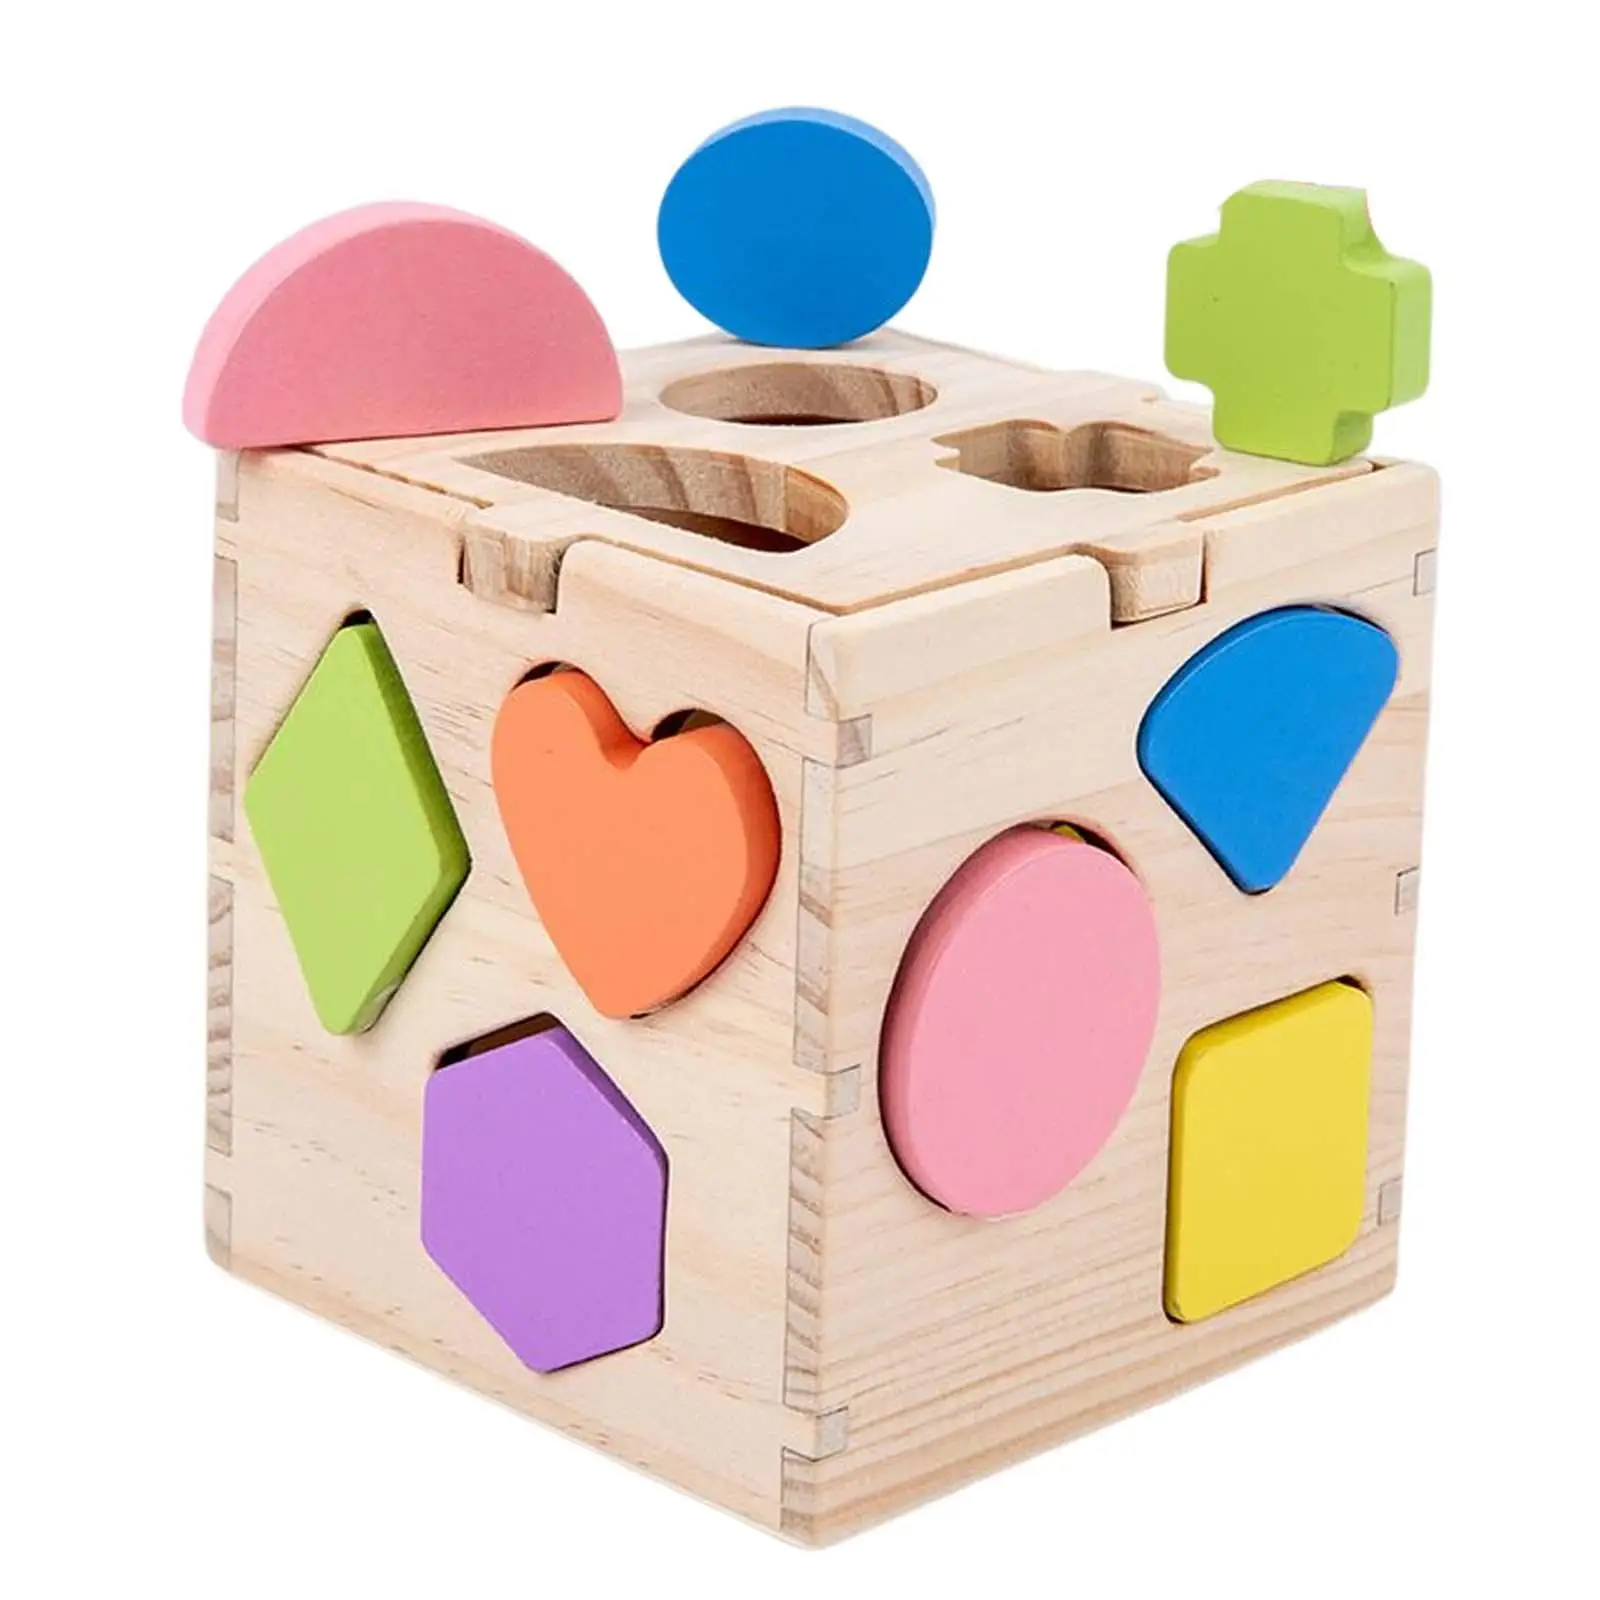 Wooden Wooden Building Blocks Preschool Learning Toys for Kids Children Gift